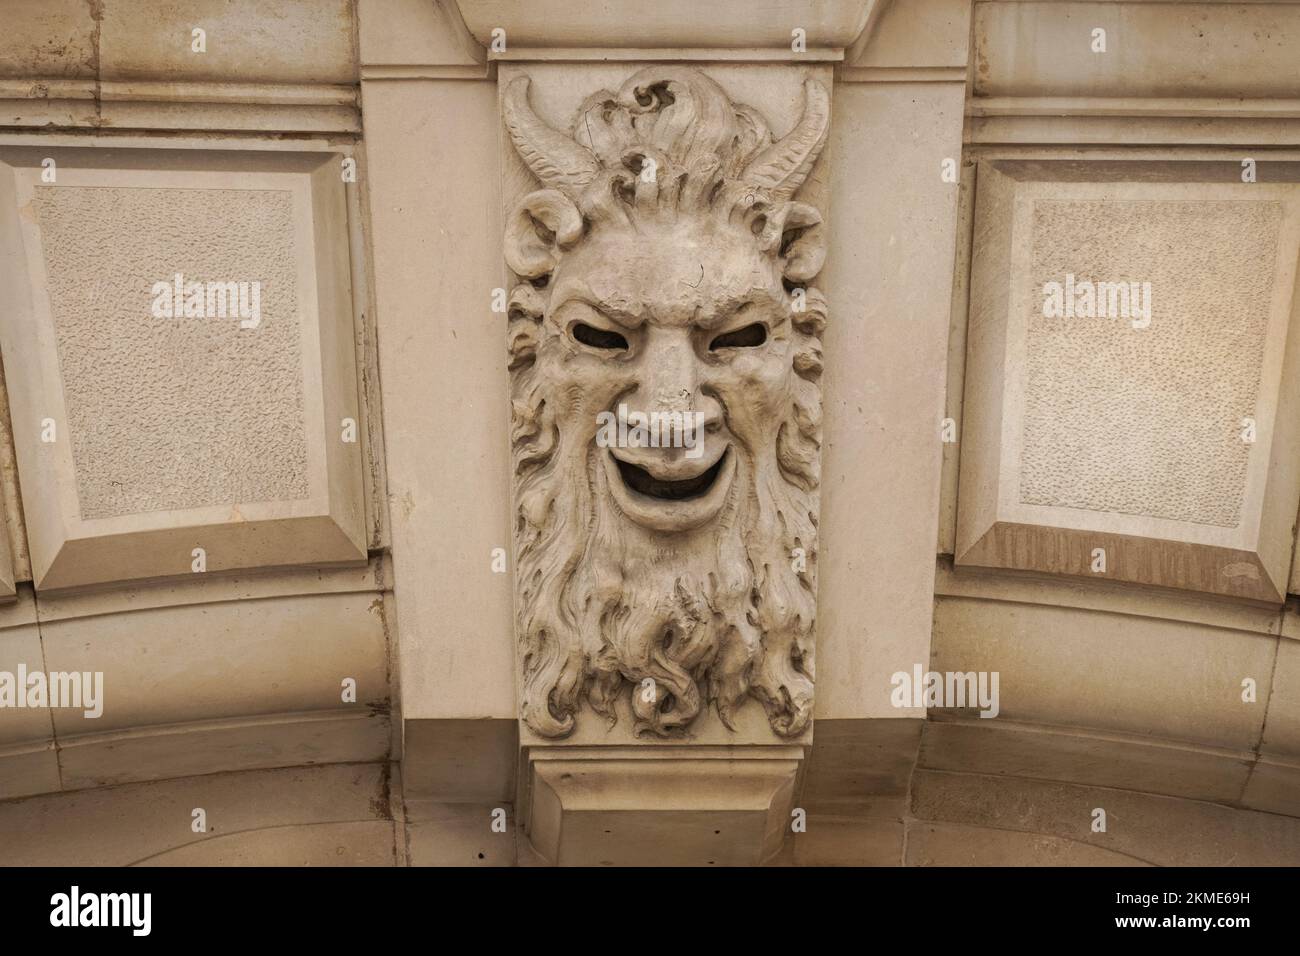 Dekoratives Relief, das Faun oder Teufel an einer Tür darstellt, London England Großbritannien Stockfoto